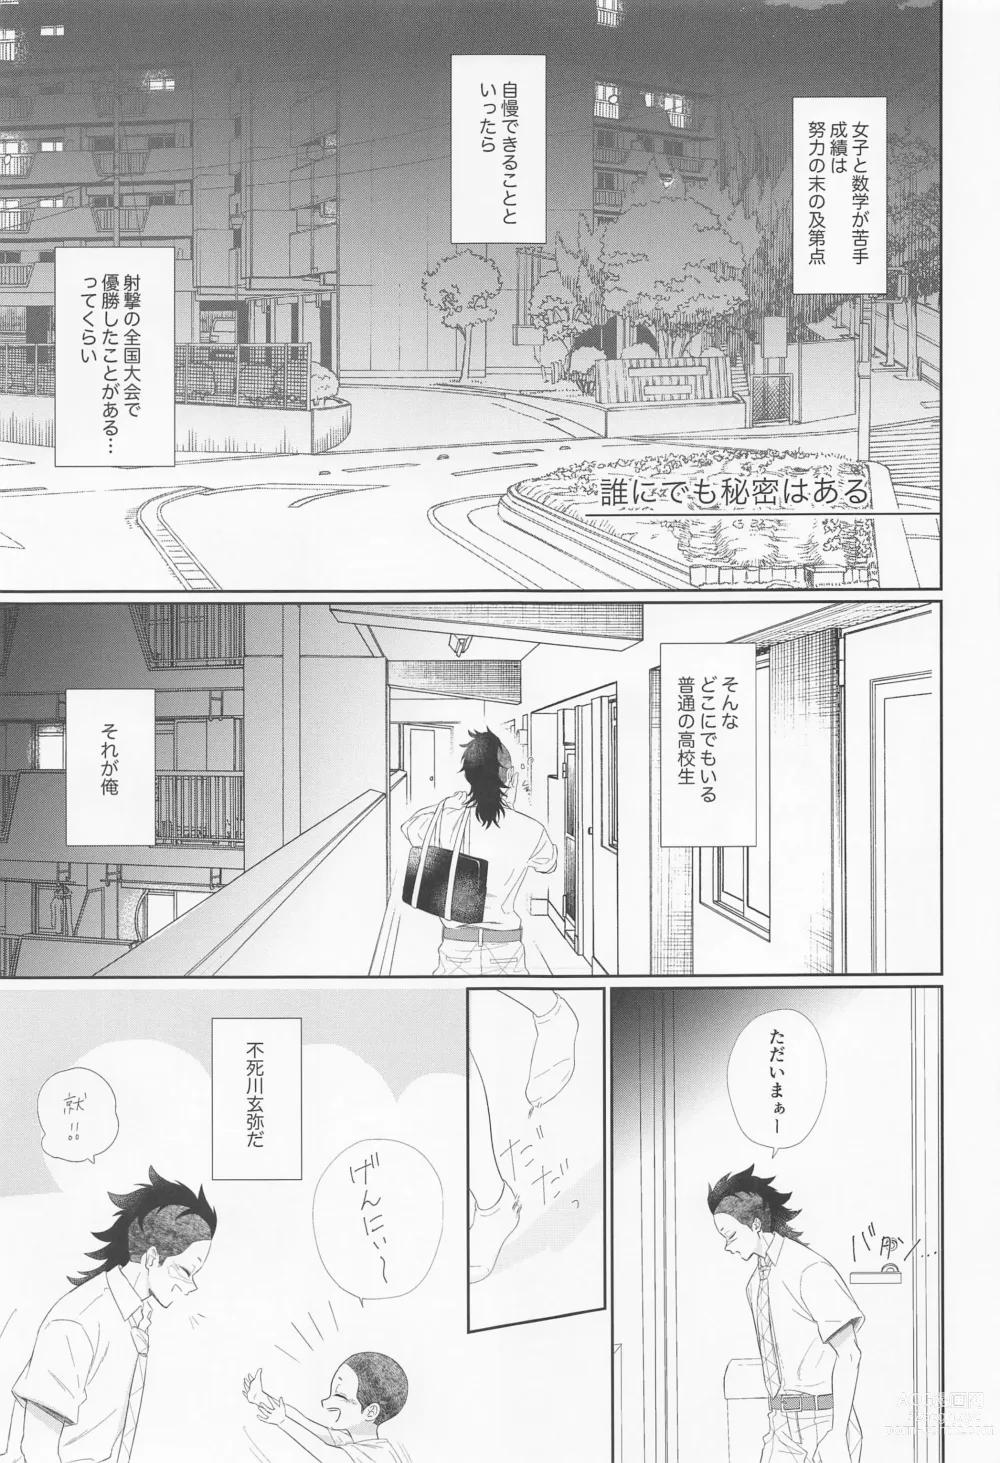 Page 7 of doujinshi Dare ni Demo Himitsu wa Aru - Everyone has secrets.